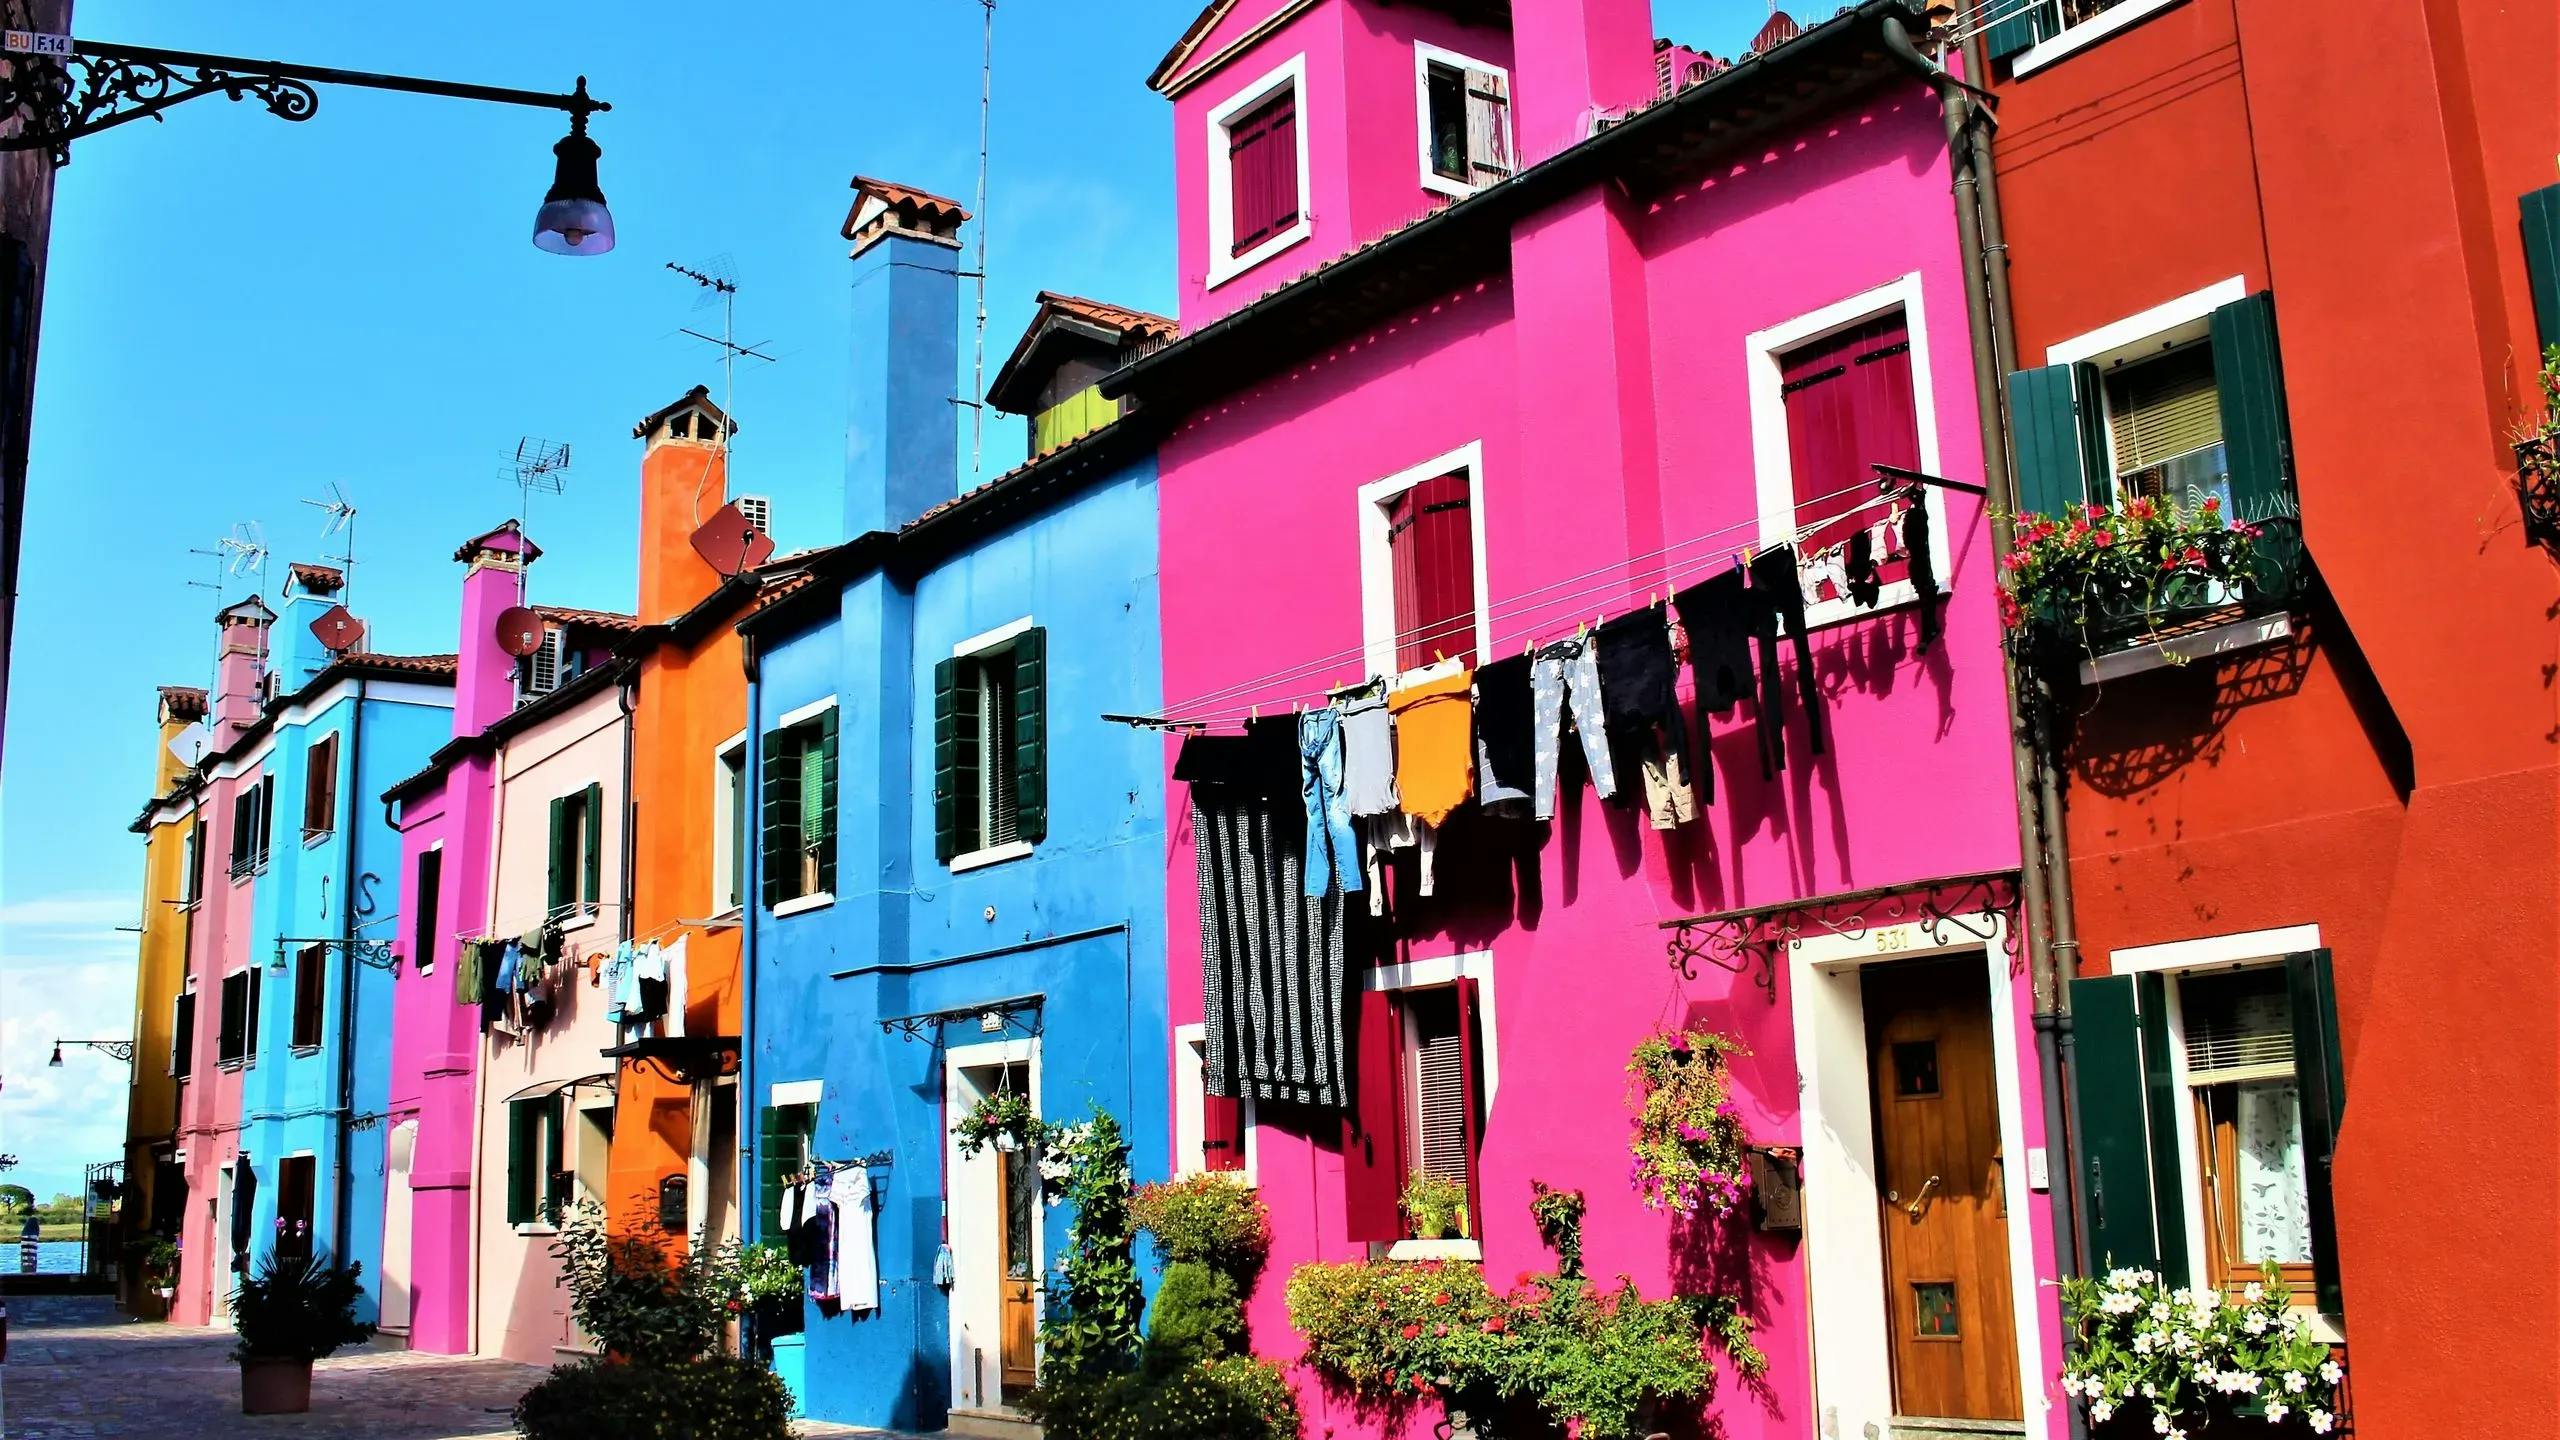 Les 8 endroits les plus colorés au monde